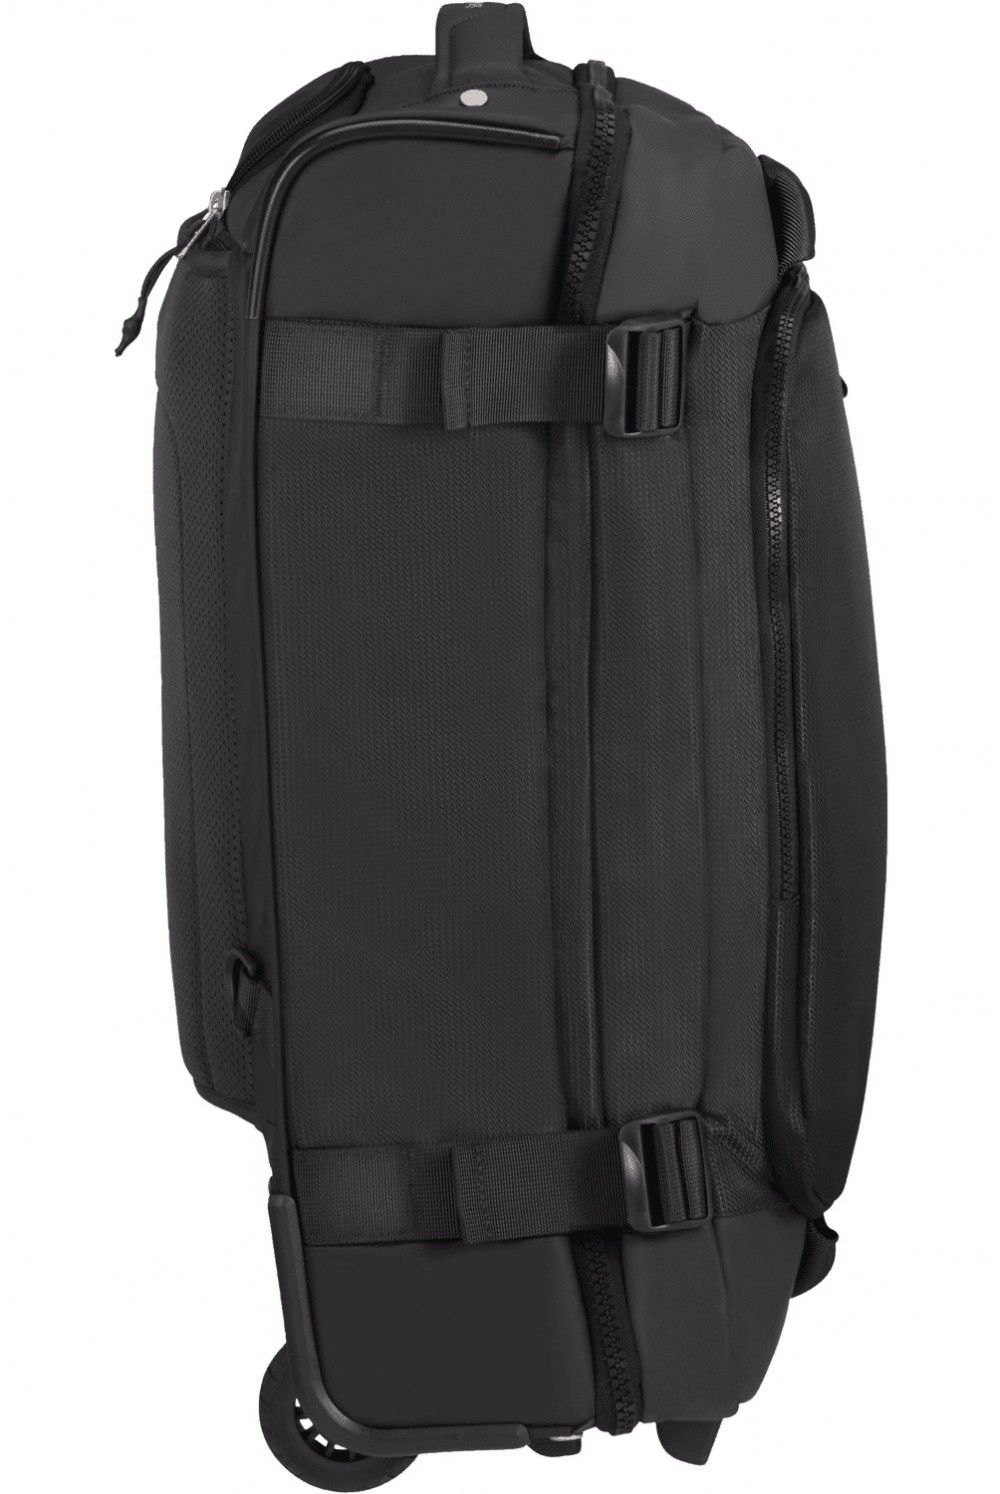 Samsonite Midtown 55cm travel bag backpack with wheels